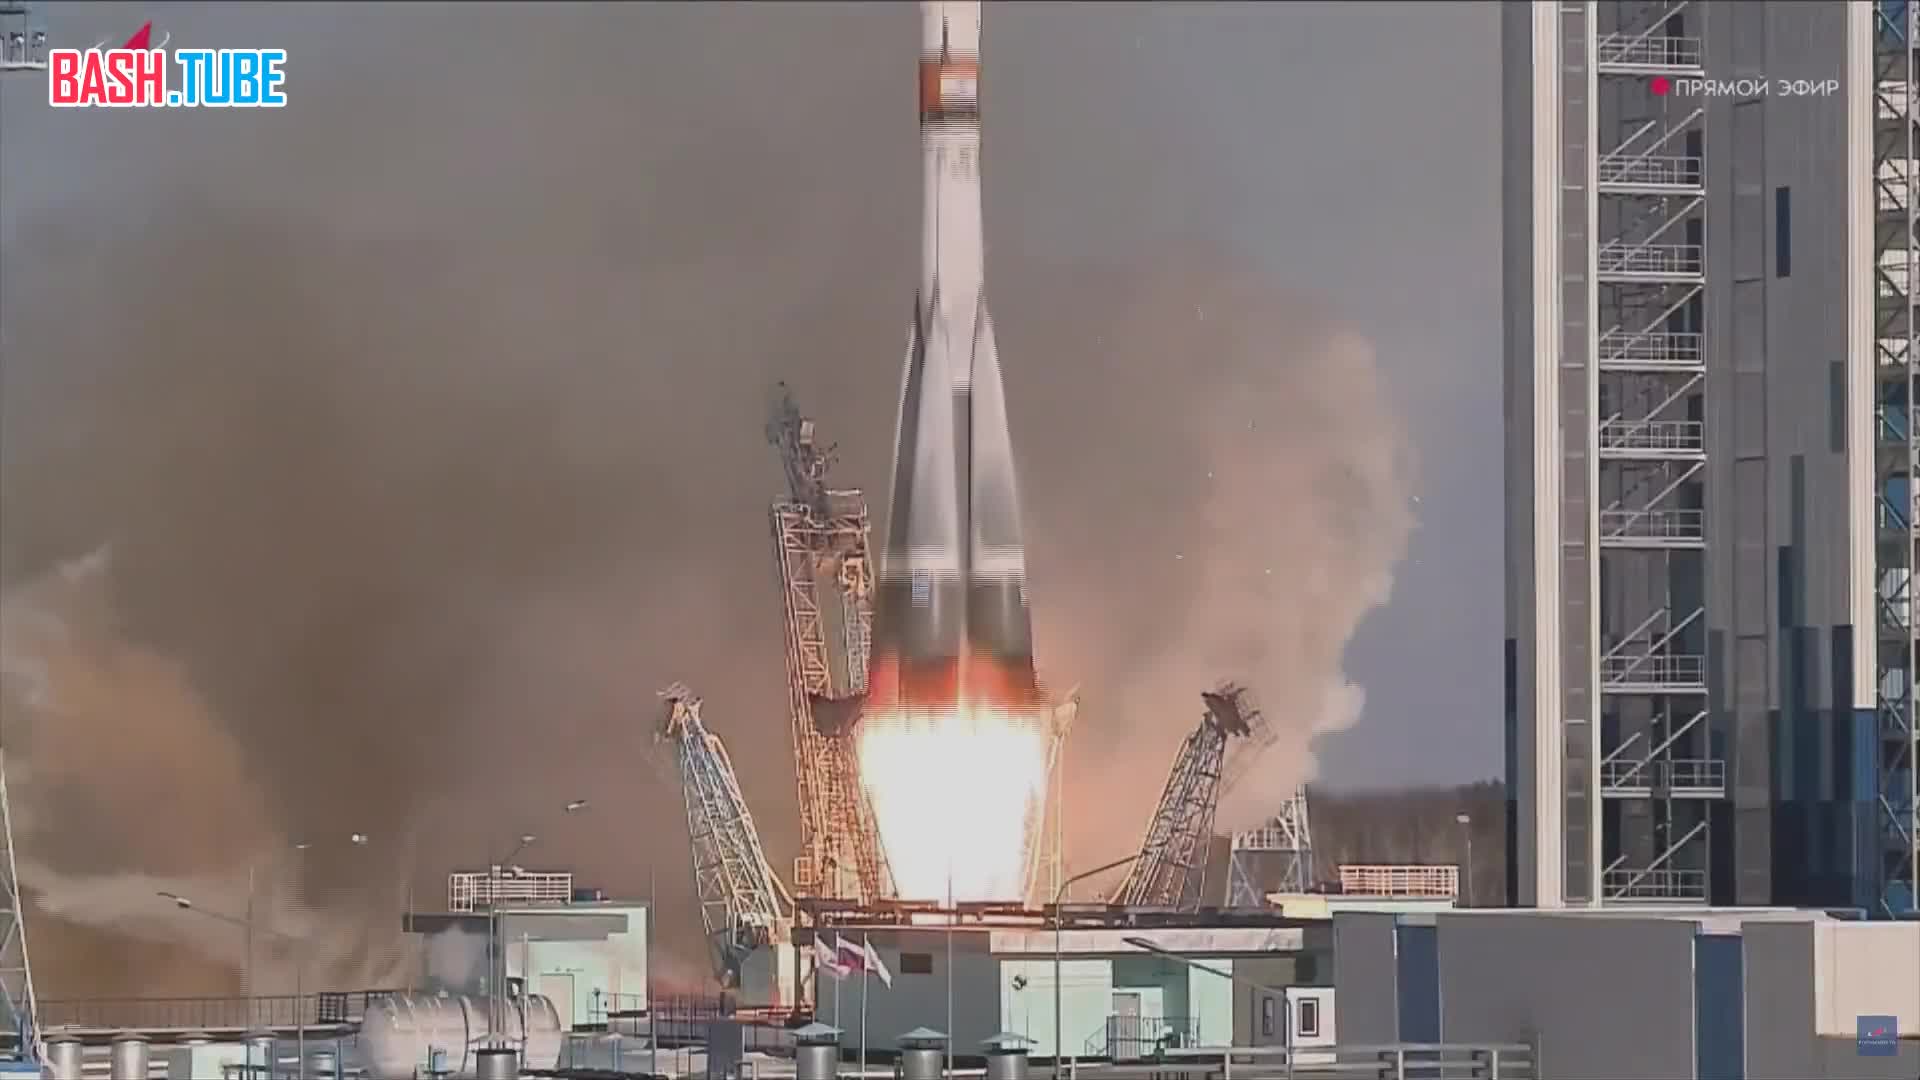  Ракета-носитель «Союз-2.1б» с космическим аппаратом «Метеор-М» стартовала с космодрома Восточный, сообщили в Роскосмосе